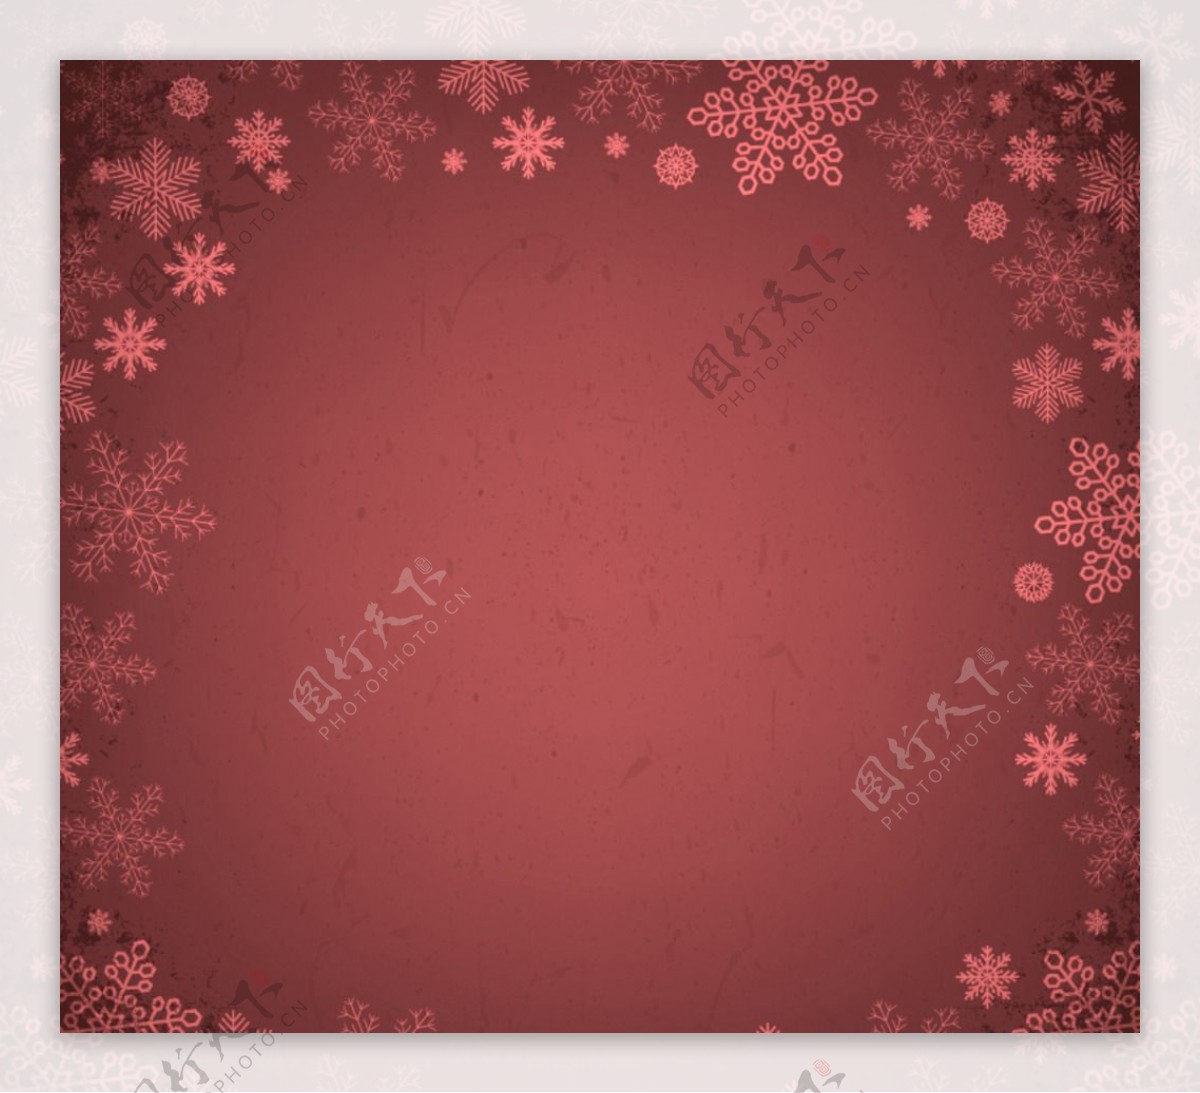 暗红色雪花边框背景矢量素材